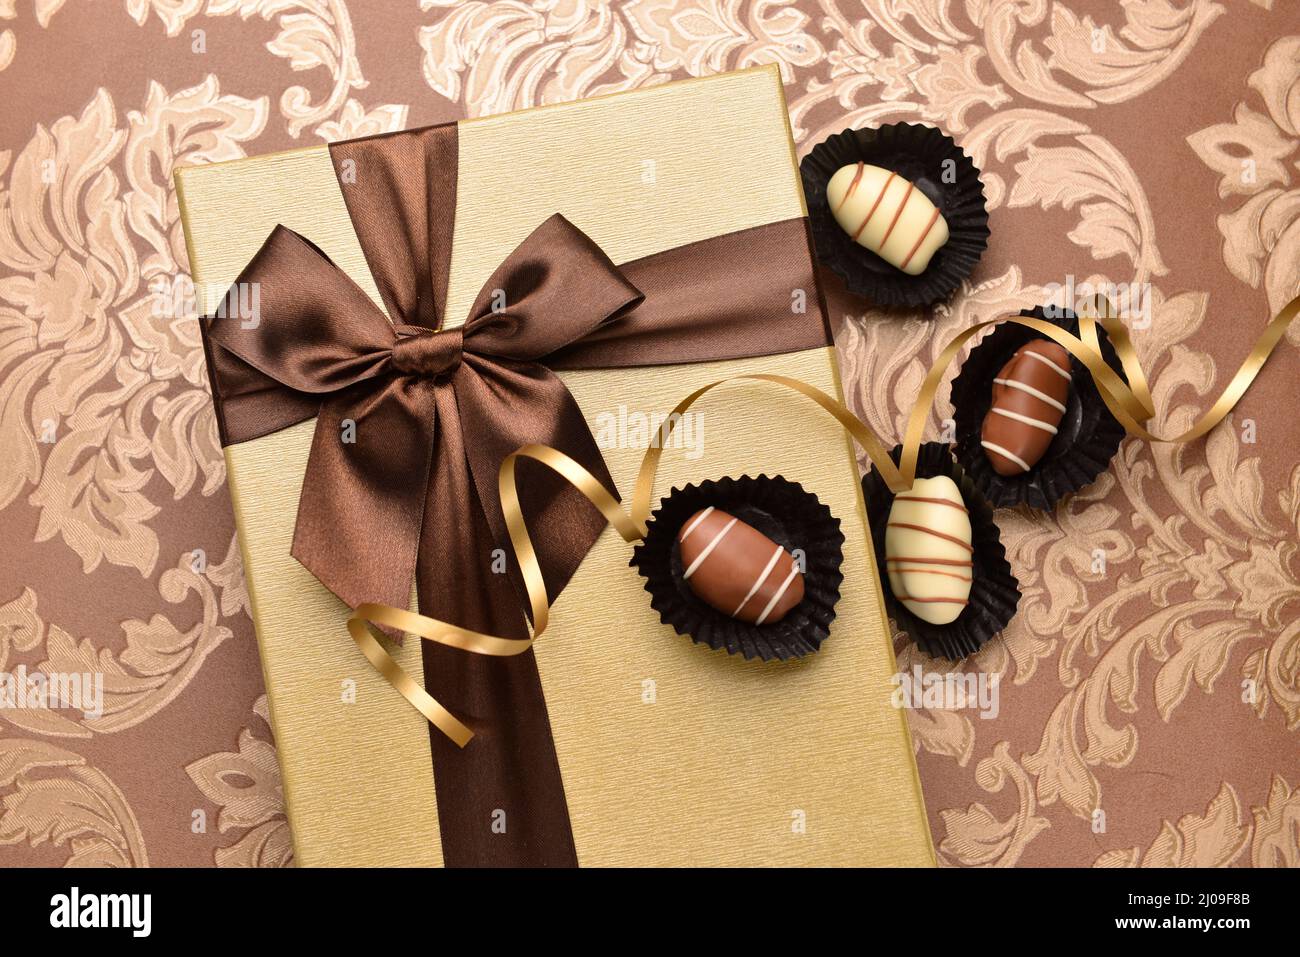 Premium-Dattel-Schokolade und geschlossene goldene Geschenkpackung mit Band. Draufsicht. Stockfoto